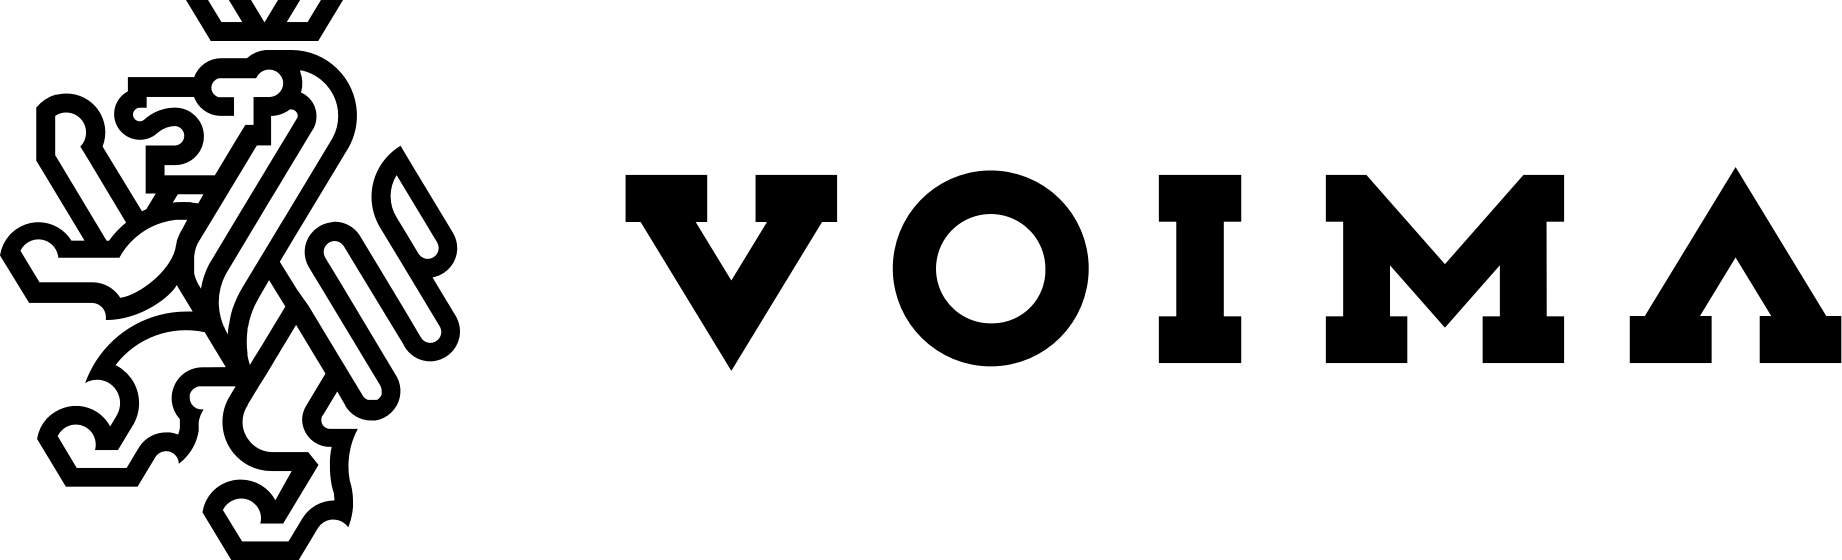 Voiman logo, joka koostuu kruunatusta leijonasta vasemmalla, jonka ohessa lukee Voima.